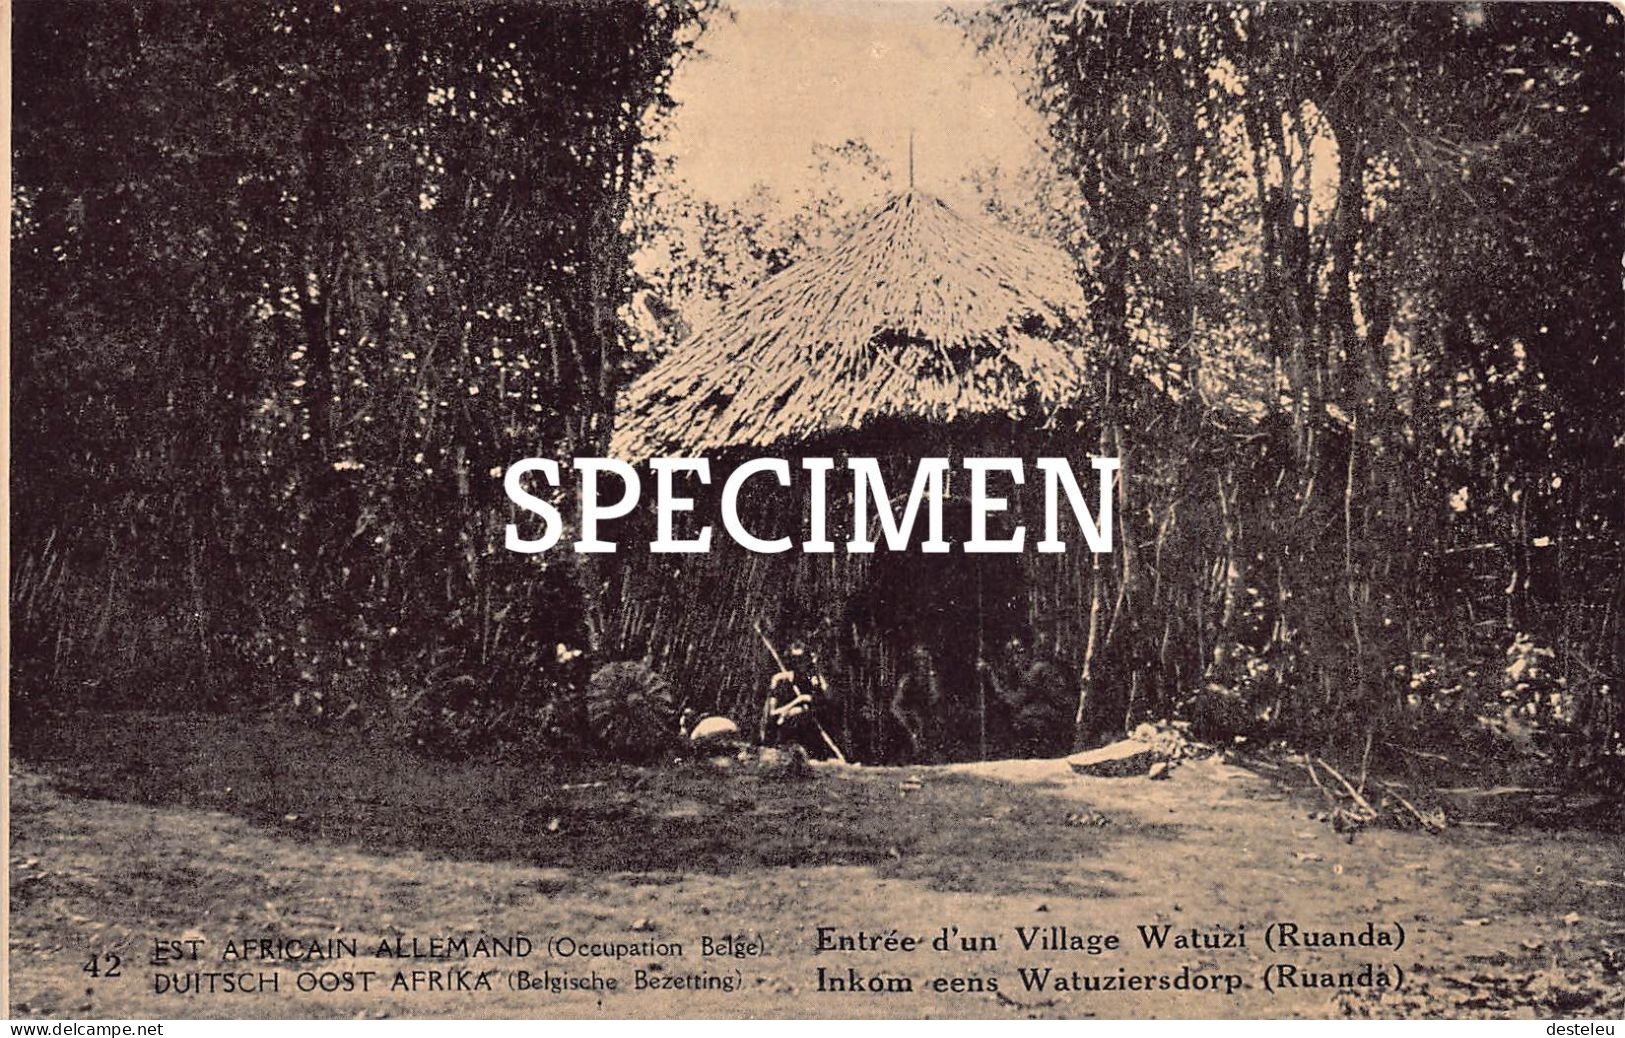 Est Africain Allemand - Entrée D'un Village Watuzi - 10 Centimes Stamp - Rwanda